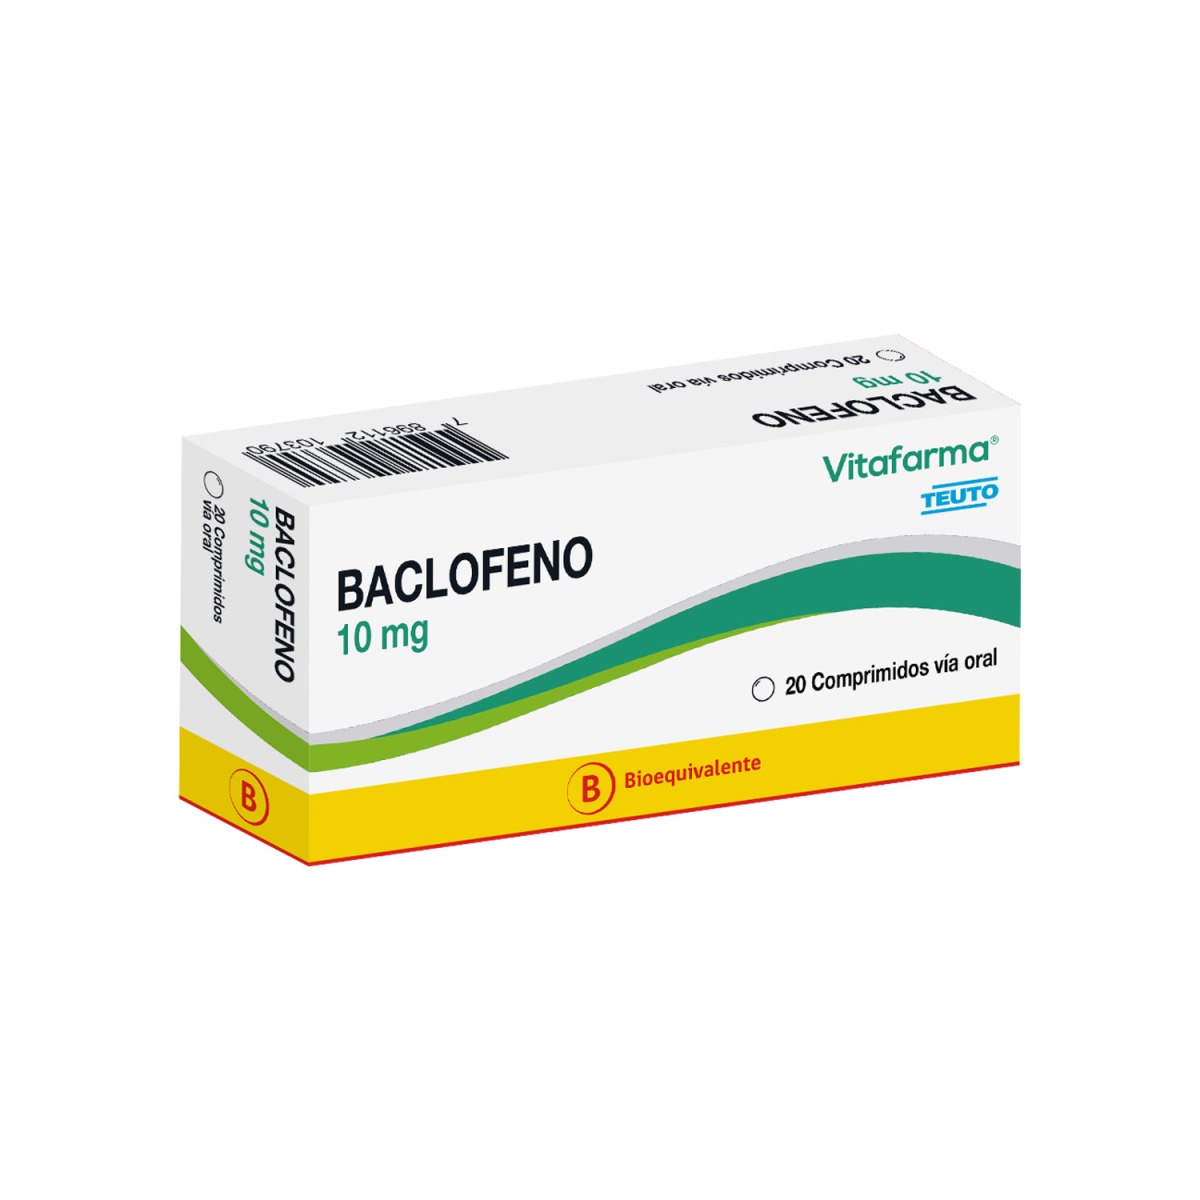 Baclofeno 10 mg